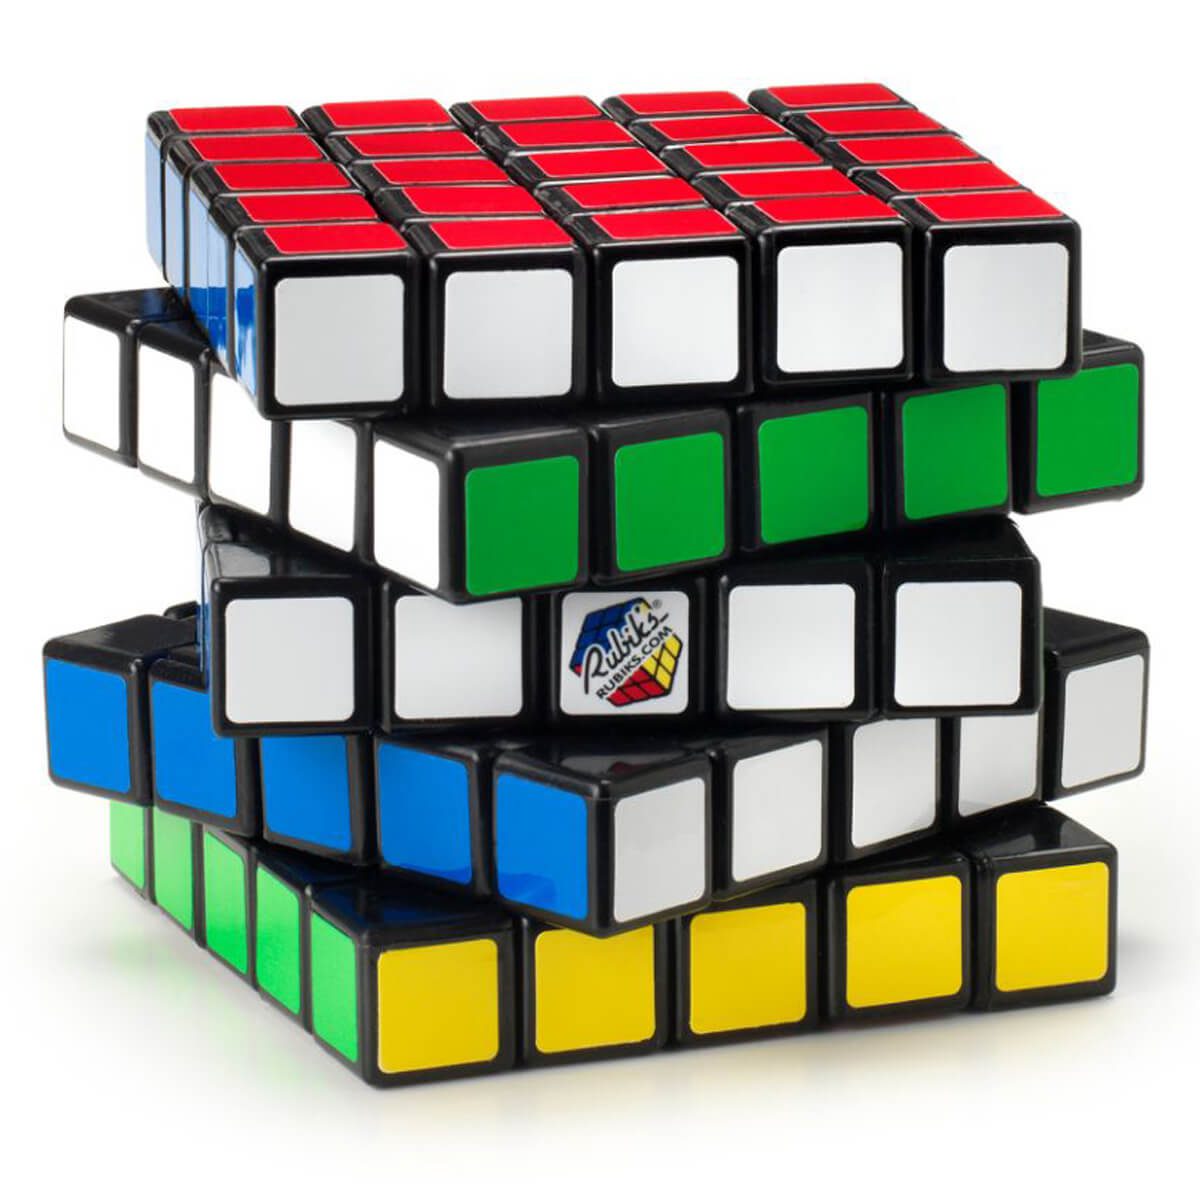 Puzzle de correspondance de couleurs 5x5 Professor’s Cube jouet de résolution de problème très complexe Rubik’s Cube avec son Guide de poche 